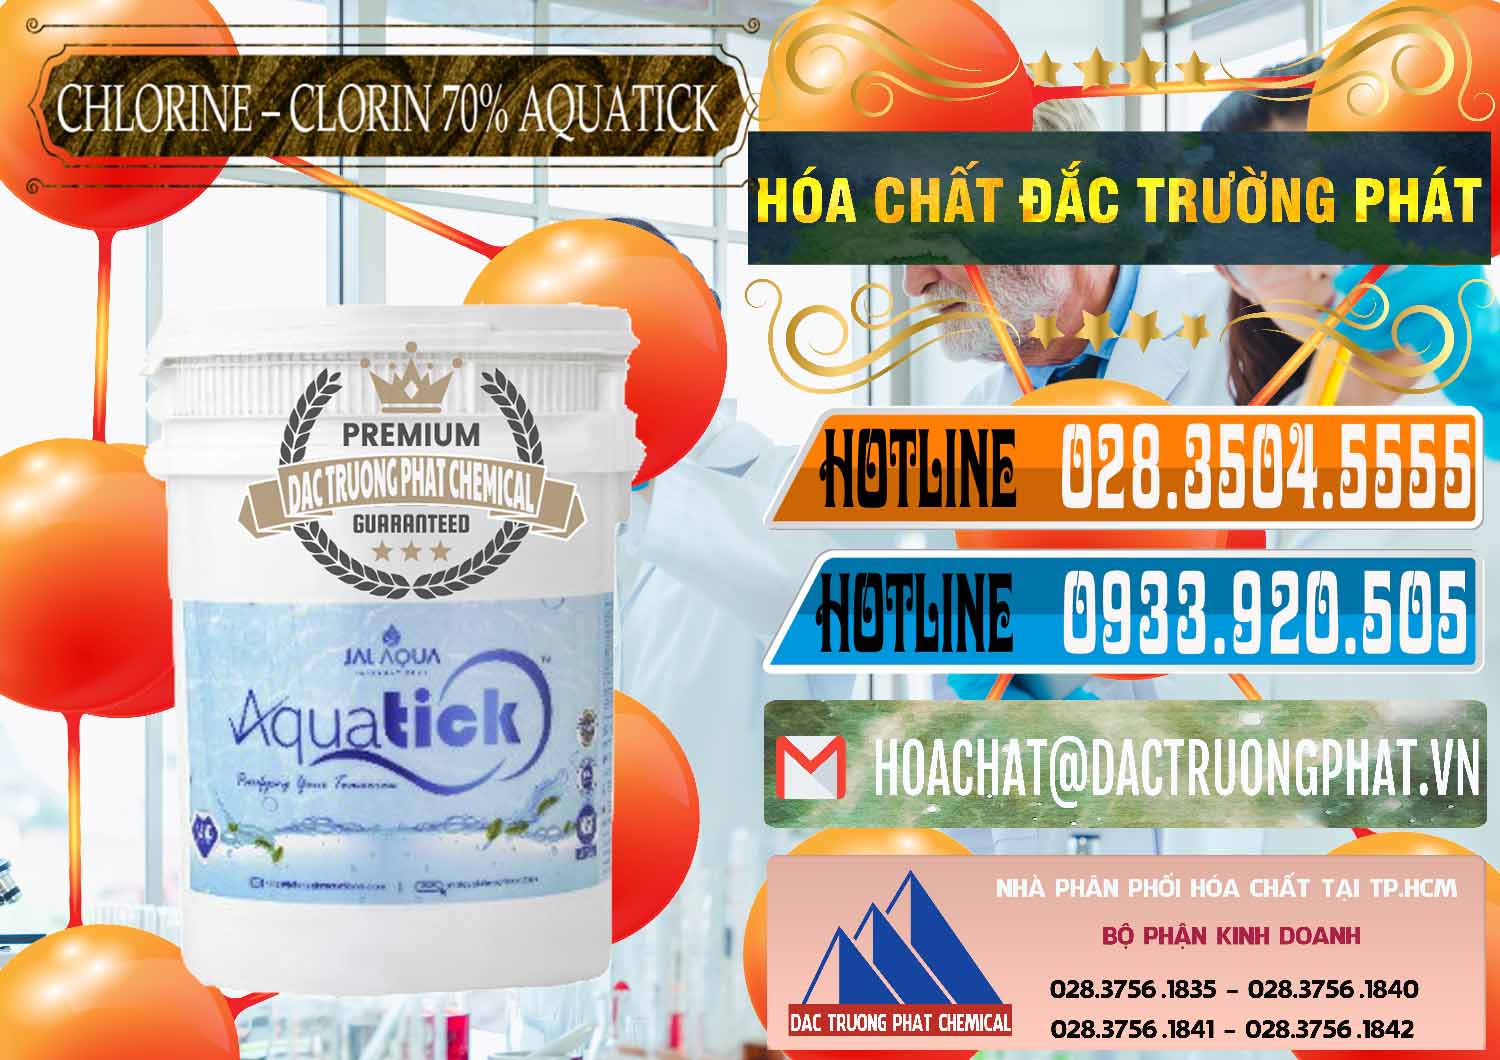 Cty chuyên cung ứng _ bán Chlorine – Clorin 70% Aquatick Thùng Cao Jal Aqua Ấn Độ India - 0237 - Công ty phân phối và cung cấp hóa chất tại TP.HCM - stmp.net